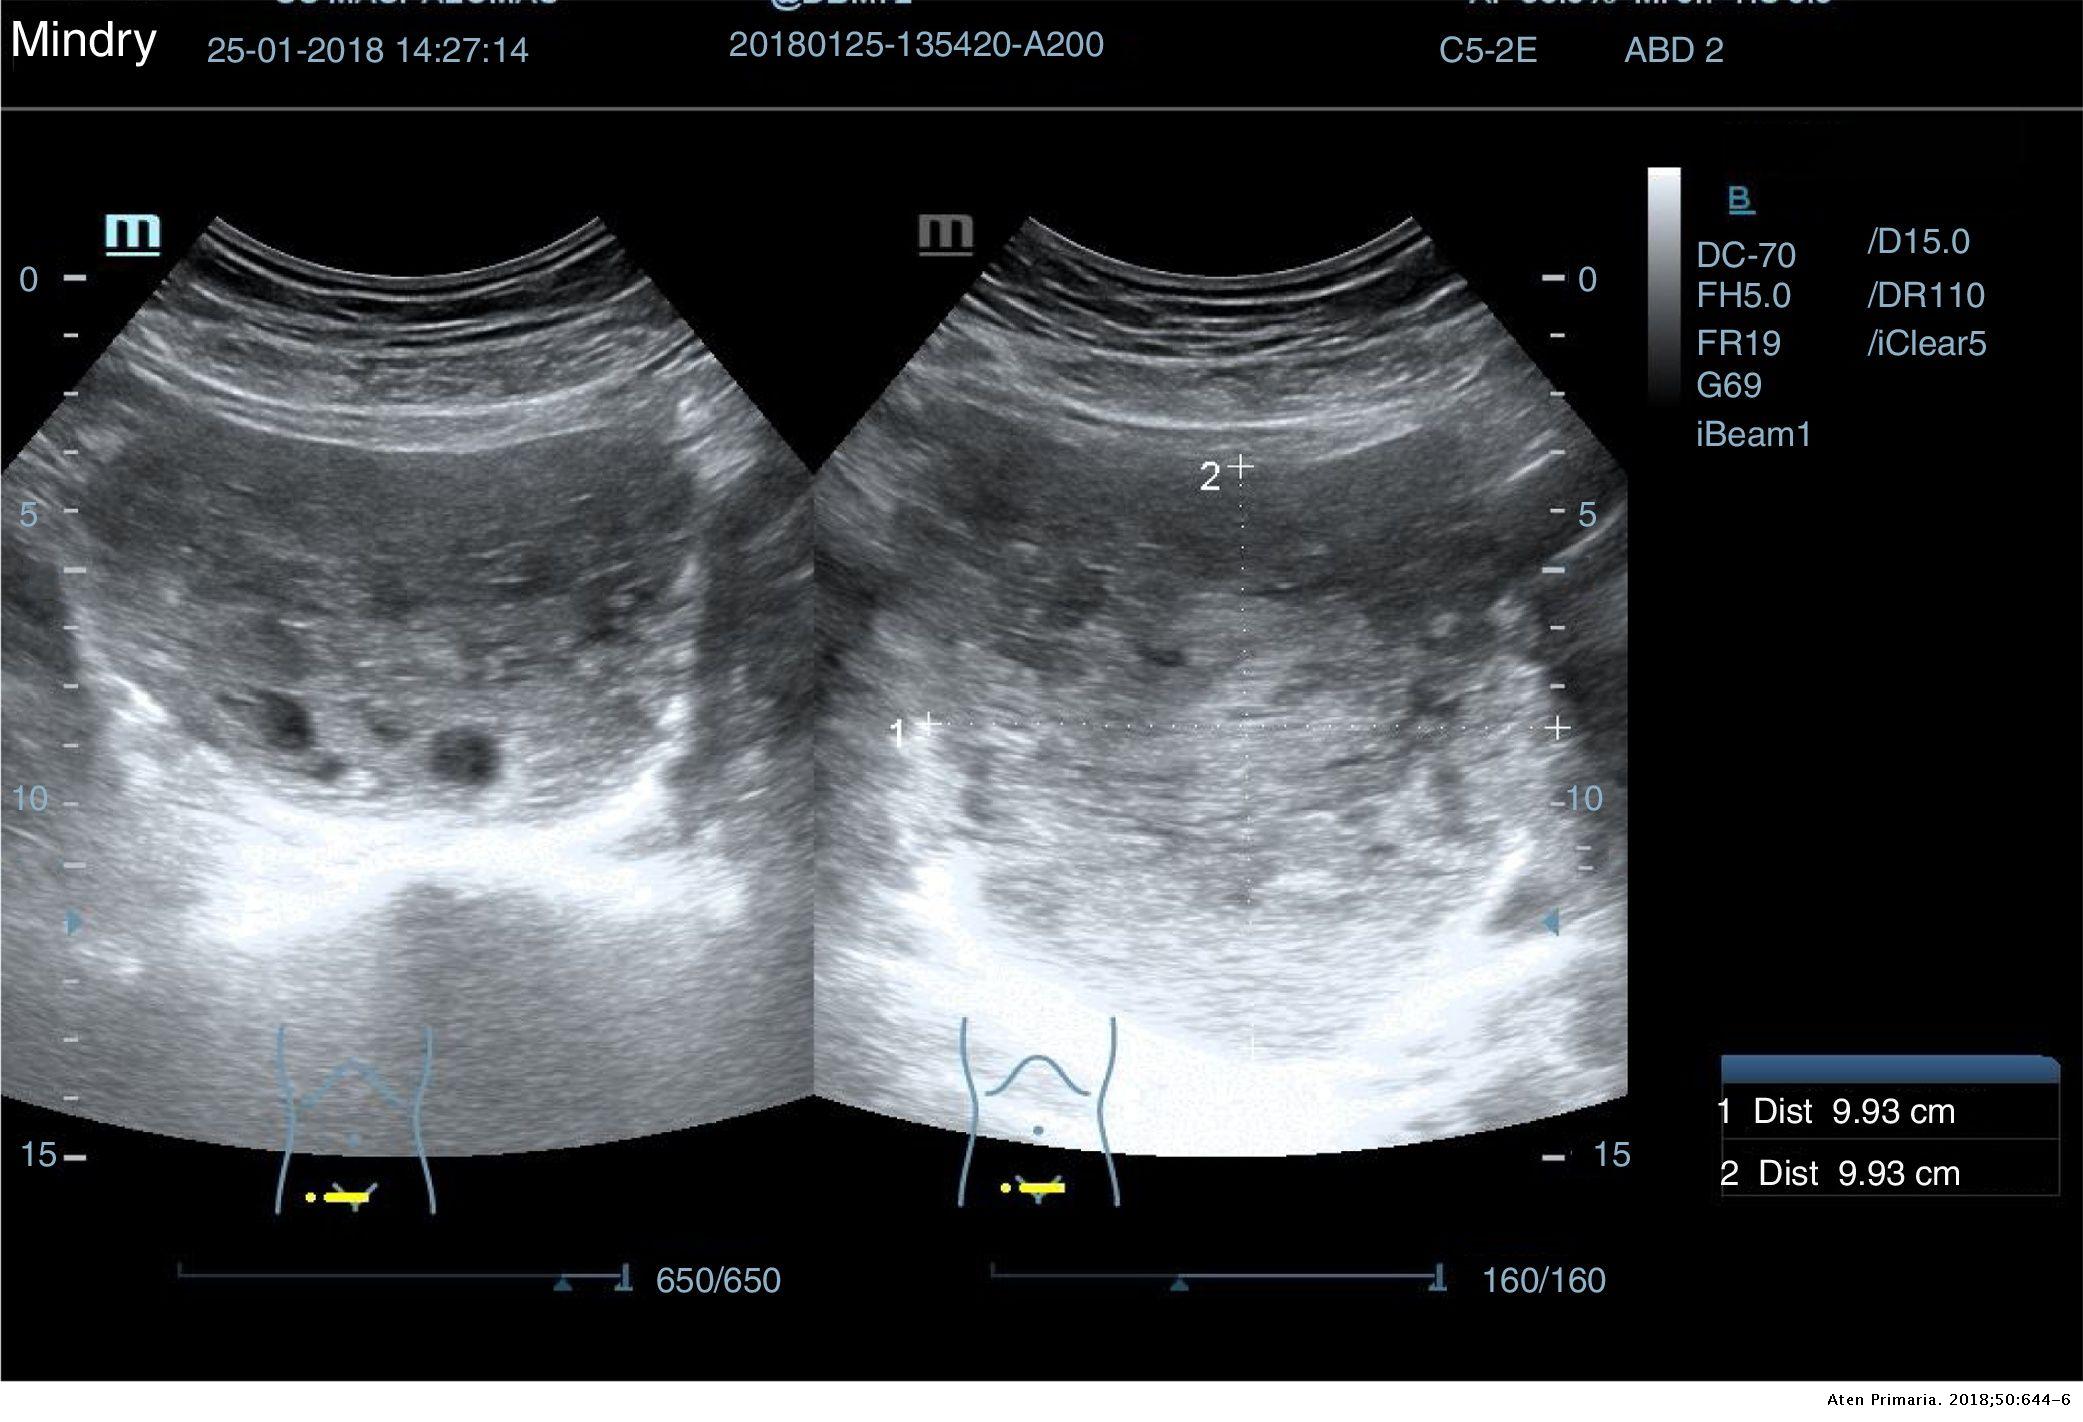 La importancia de la ecografía abdominal en el manejo de tumoraciones  abdomino/pélvicas en atención primaria | Atención Primaria